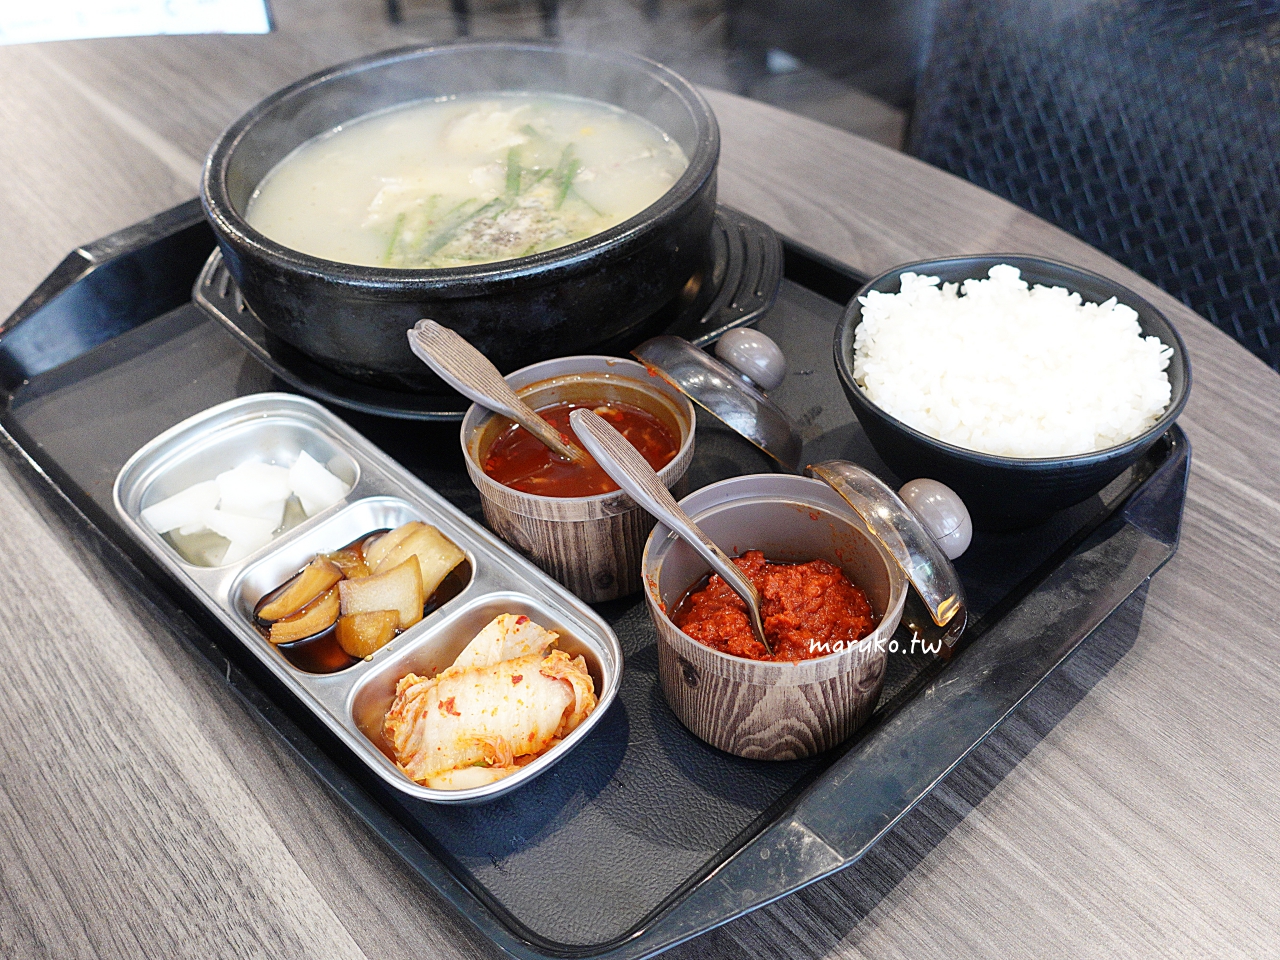 【台北】 東大門韓國特色料理 隱藏學區一個人就能吃的馬鈴薯豬骨湯飯 @Maruko與美食有個約會